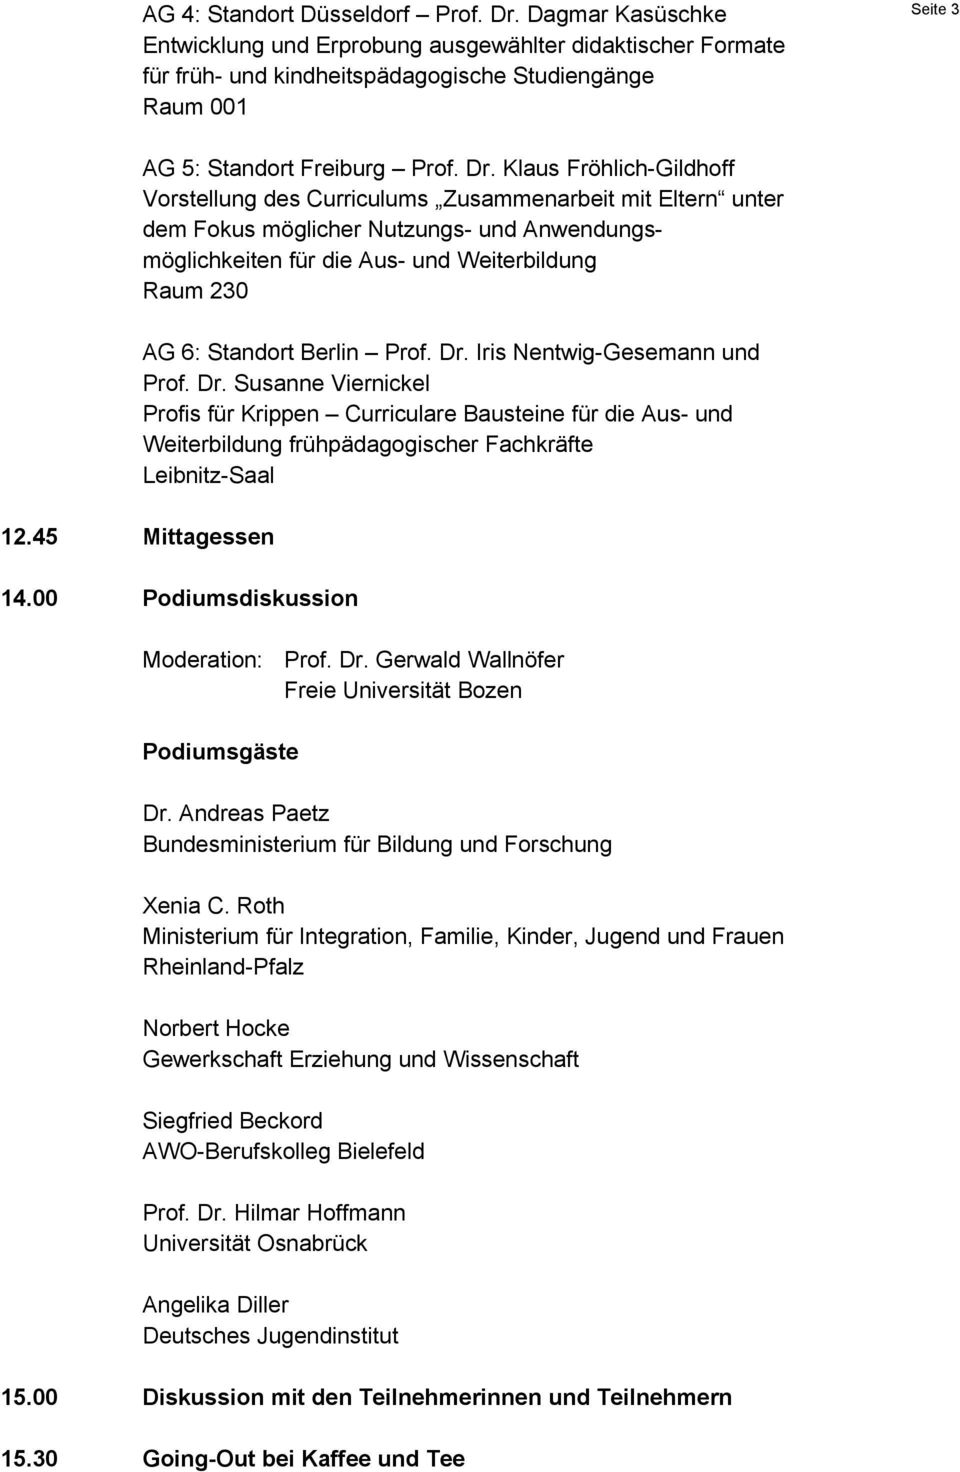 Klaus Fröhlich-Gildhoff Vorstellung des Curriculums Zusammenarbeit mit Eltern unter dem Fokus möglicher Nutzungs- und Anwendungsmöglichkeiten für die Aus- und Weiterbildung Raum 230 AG 6: Standort